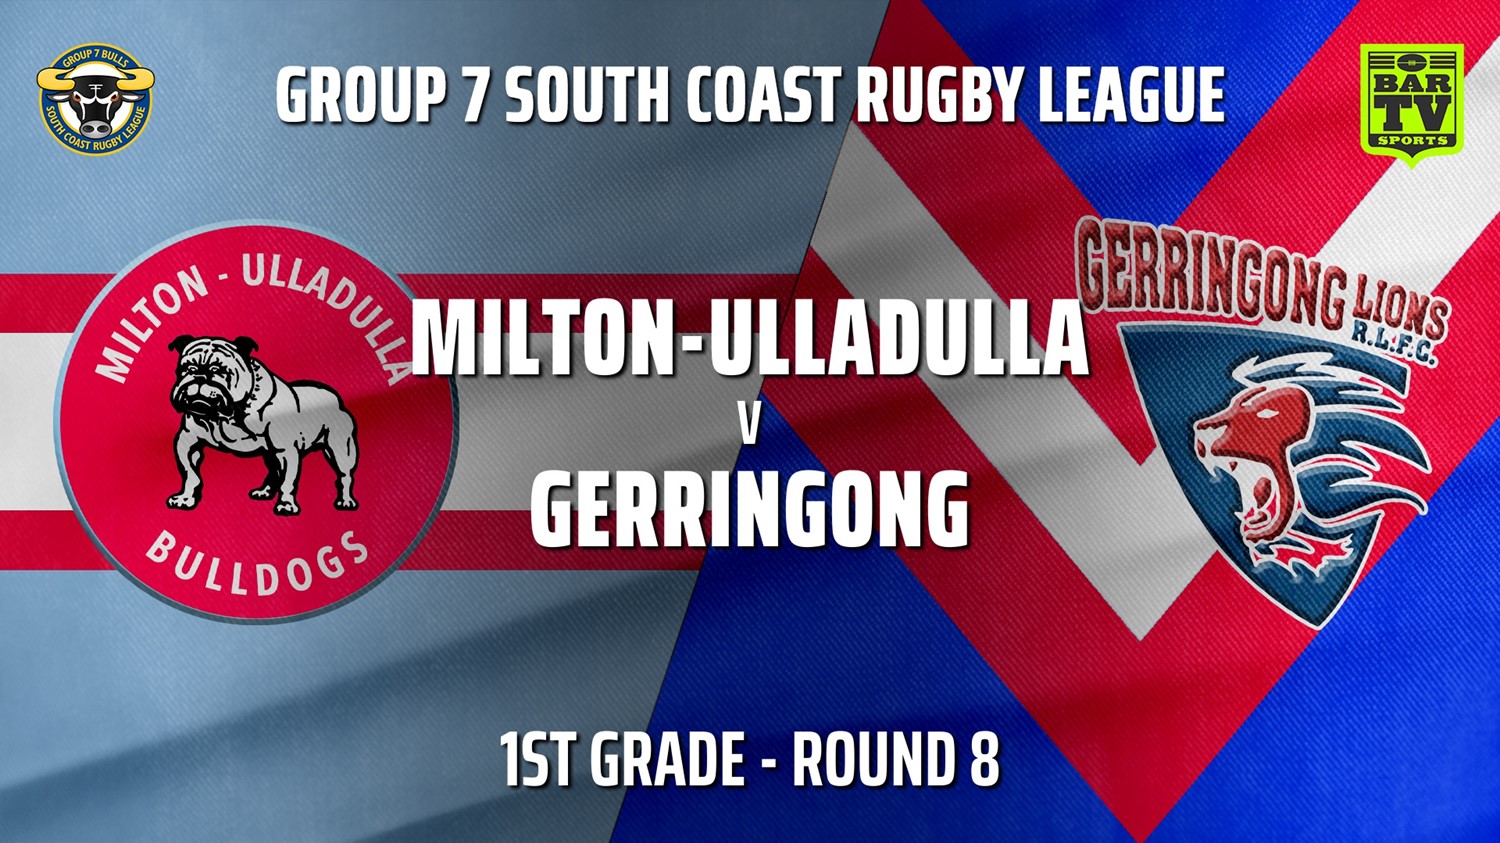 210606-Group 7 RL Round 8 - 1st Grade - Milton-Ulladulla Bulldogs v Gerringong Slate Image